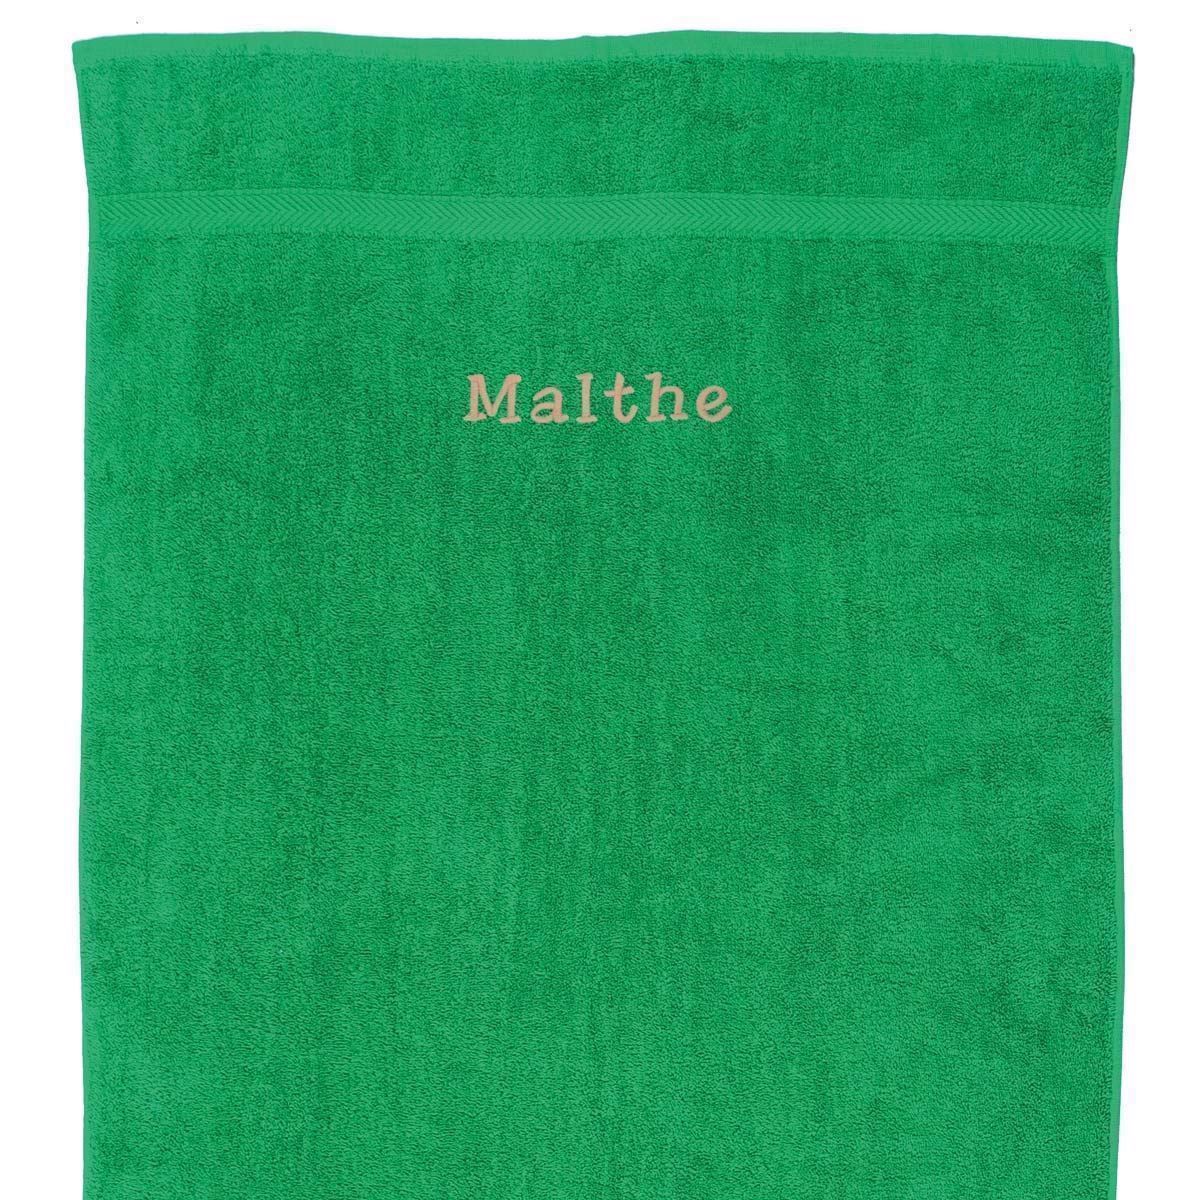 Græsgrønt Håndklæde med navn -  2 størrelser